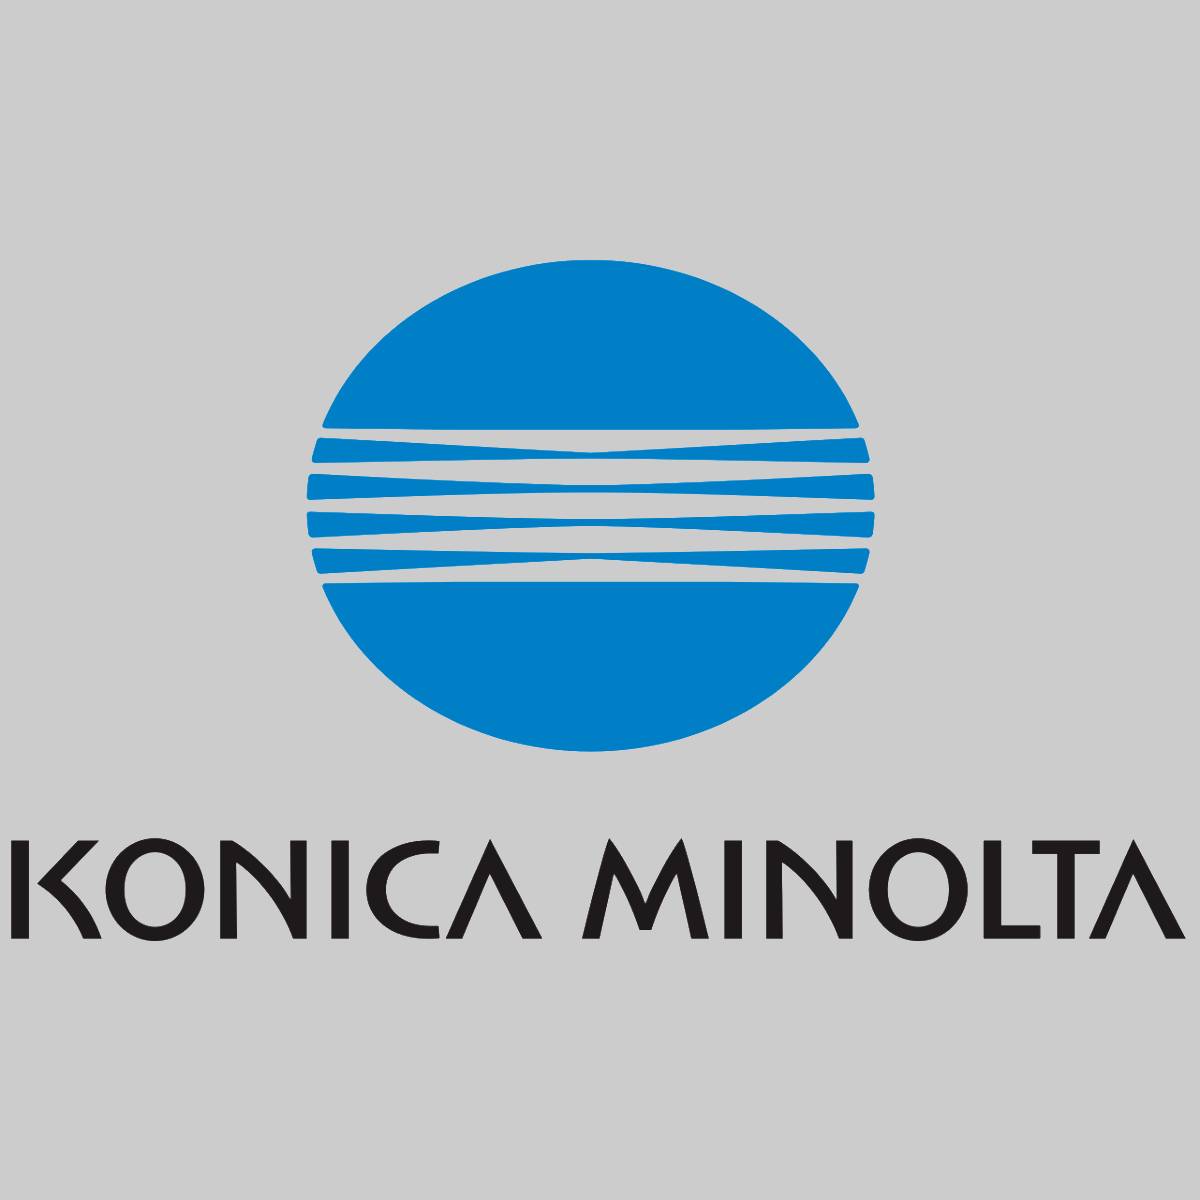 "Original Konica Minolta Toner TN622Y Yellow A5E7251 Bizhub Press C 6100 NEU OVP